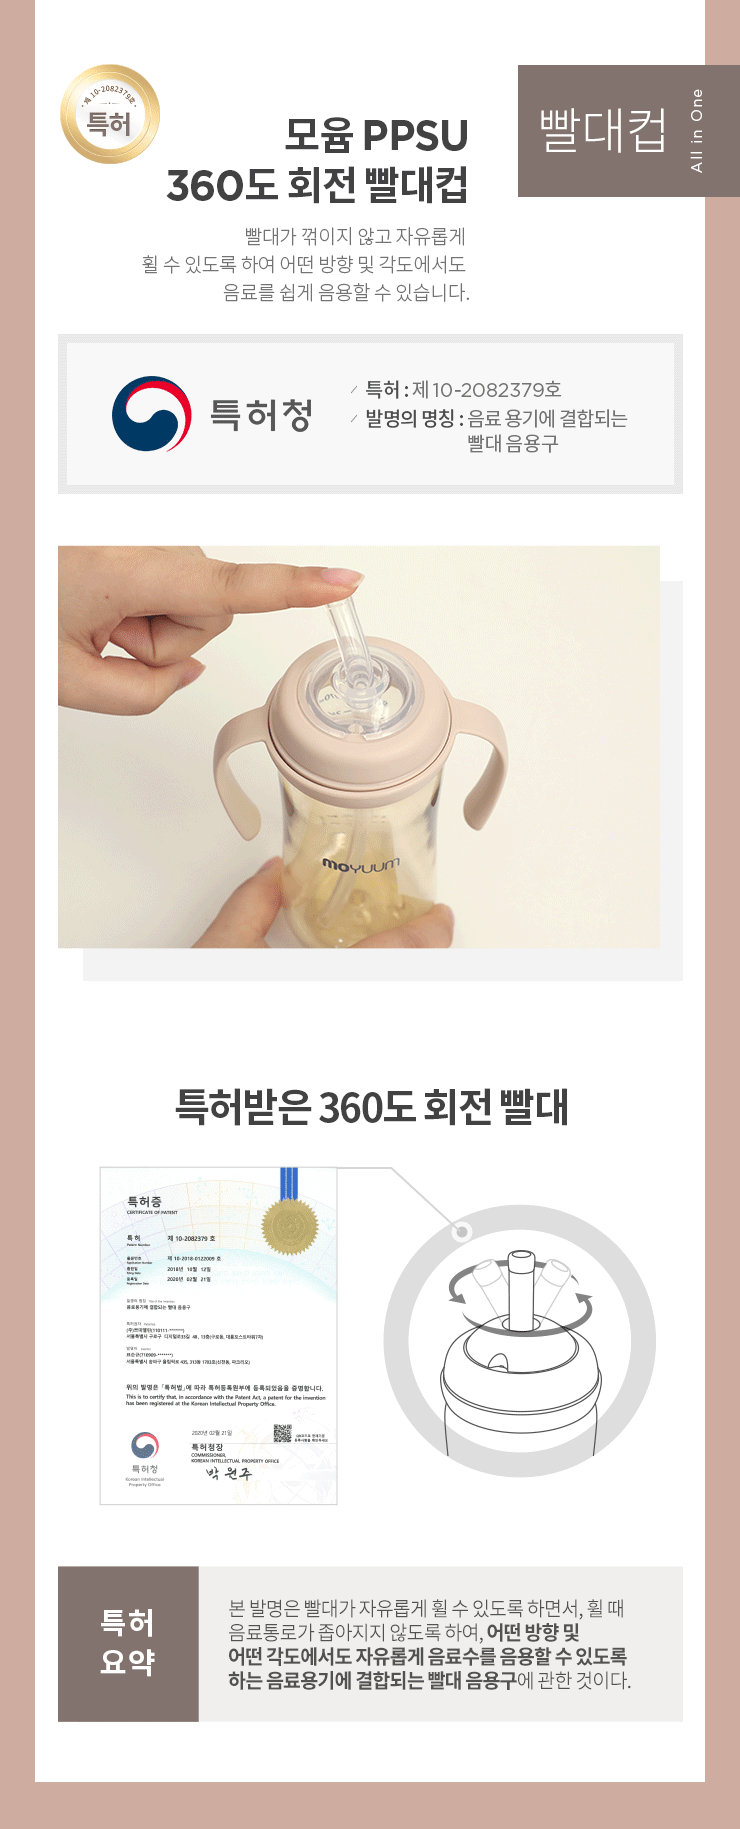 韓國食品-[Moyuum] Premium PPSU All in One Bottle 270ml 1ea